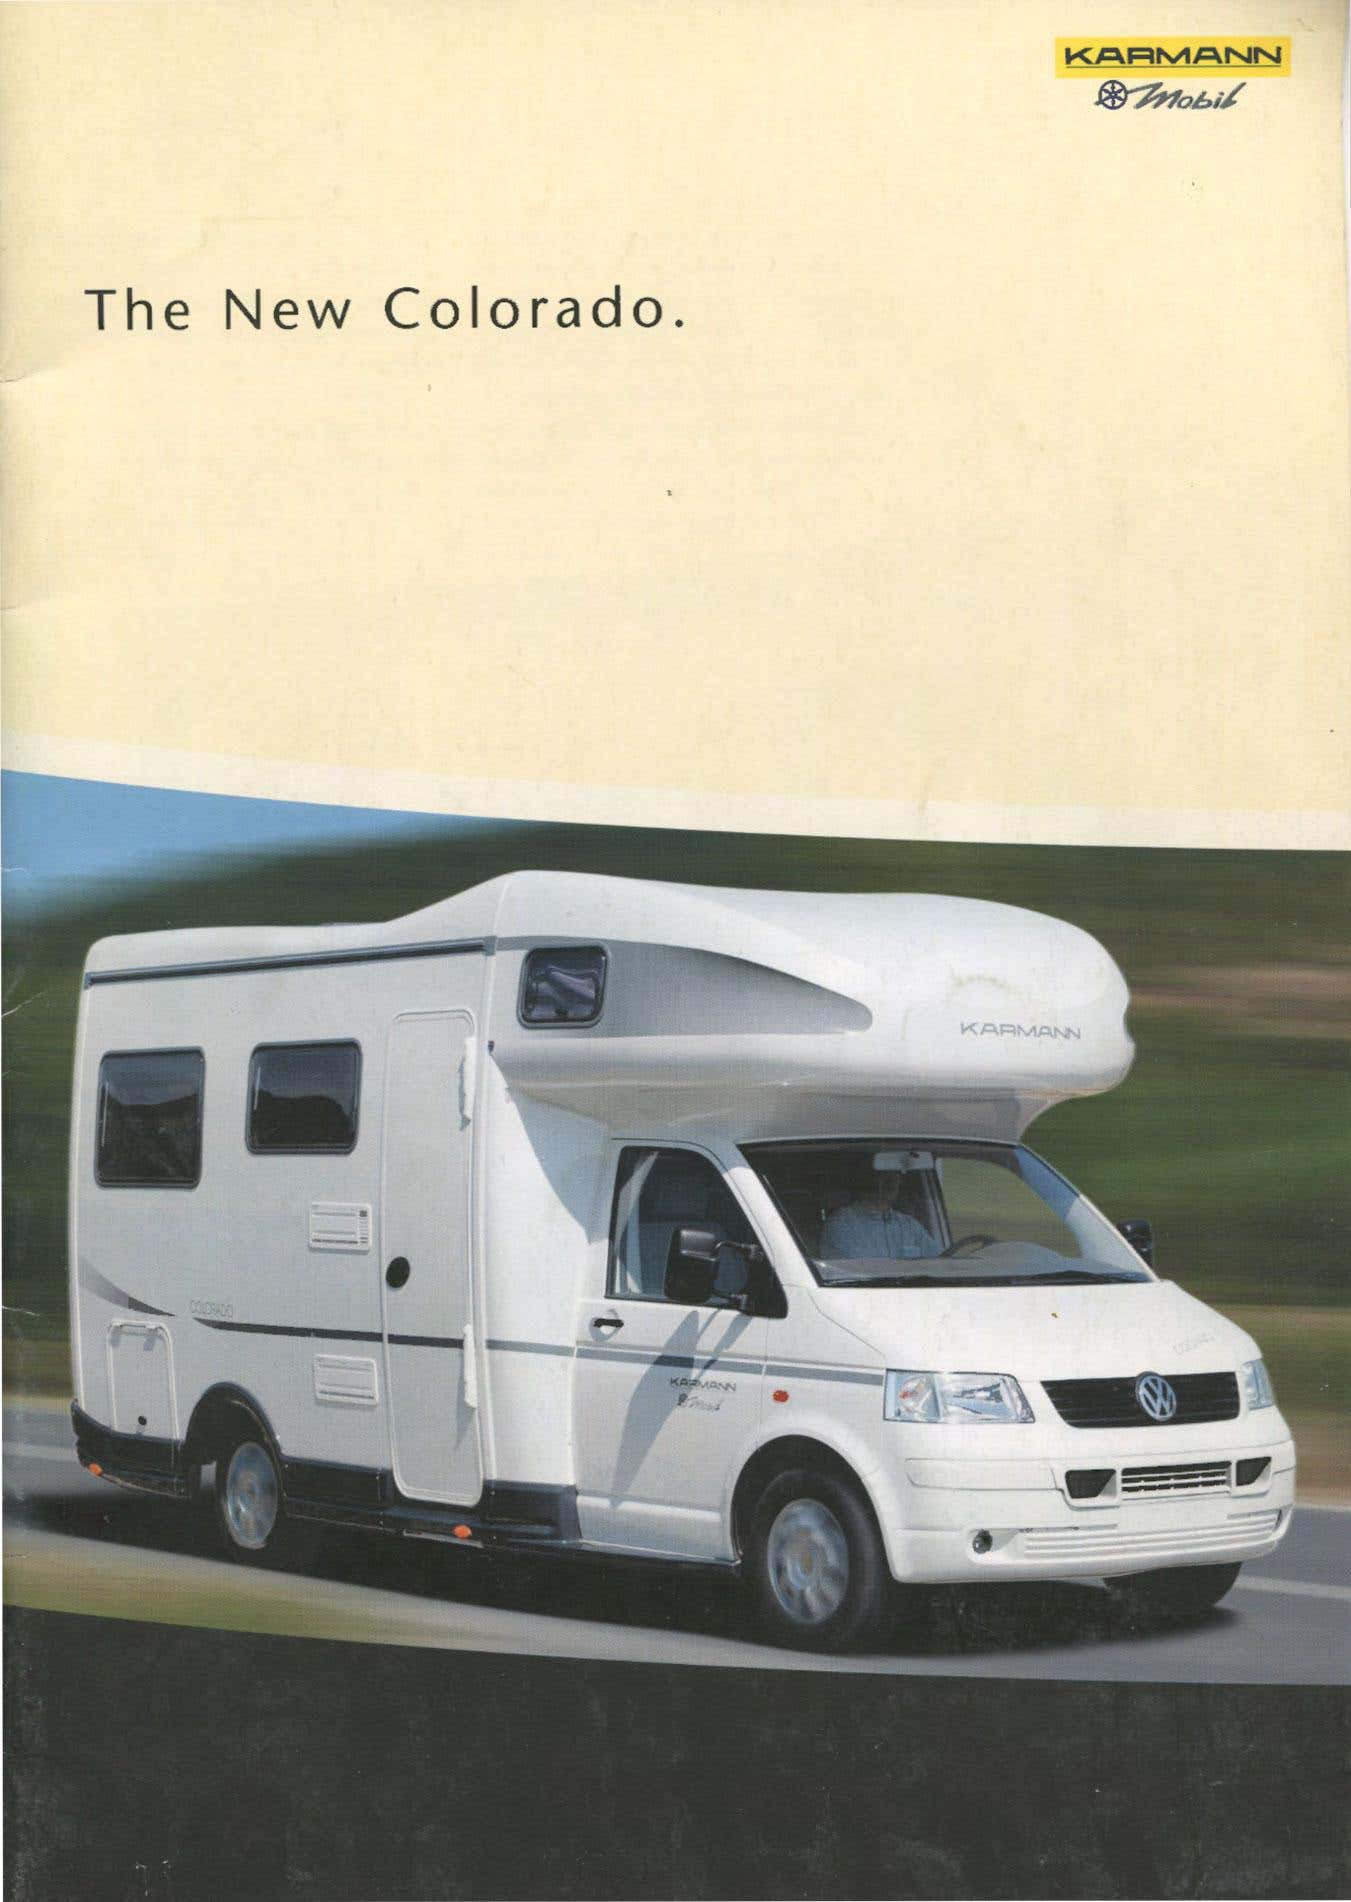 2003 T5 Karmann Mobil Colorado Brochure